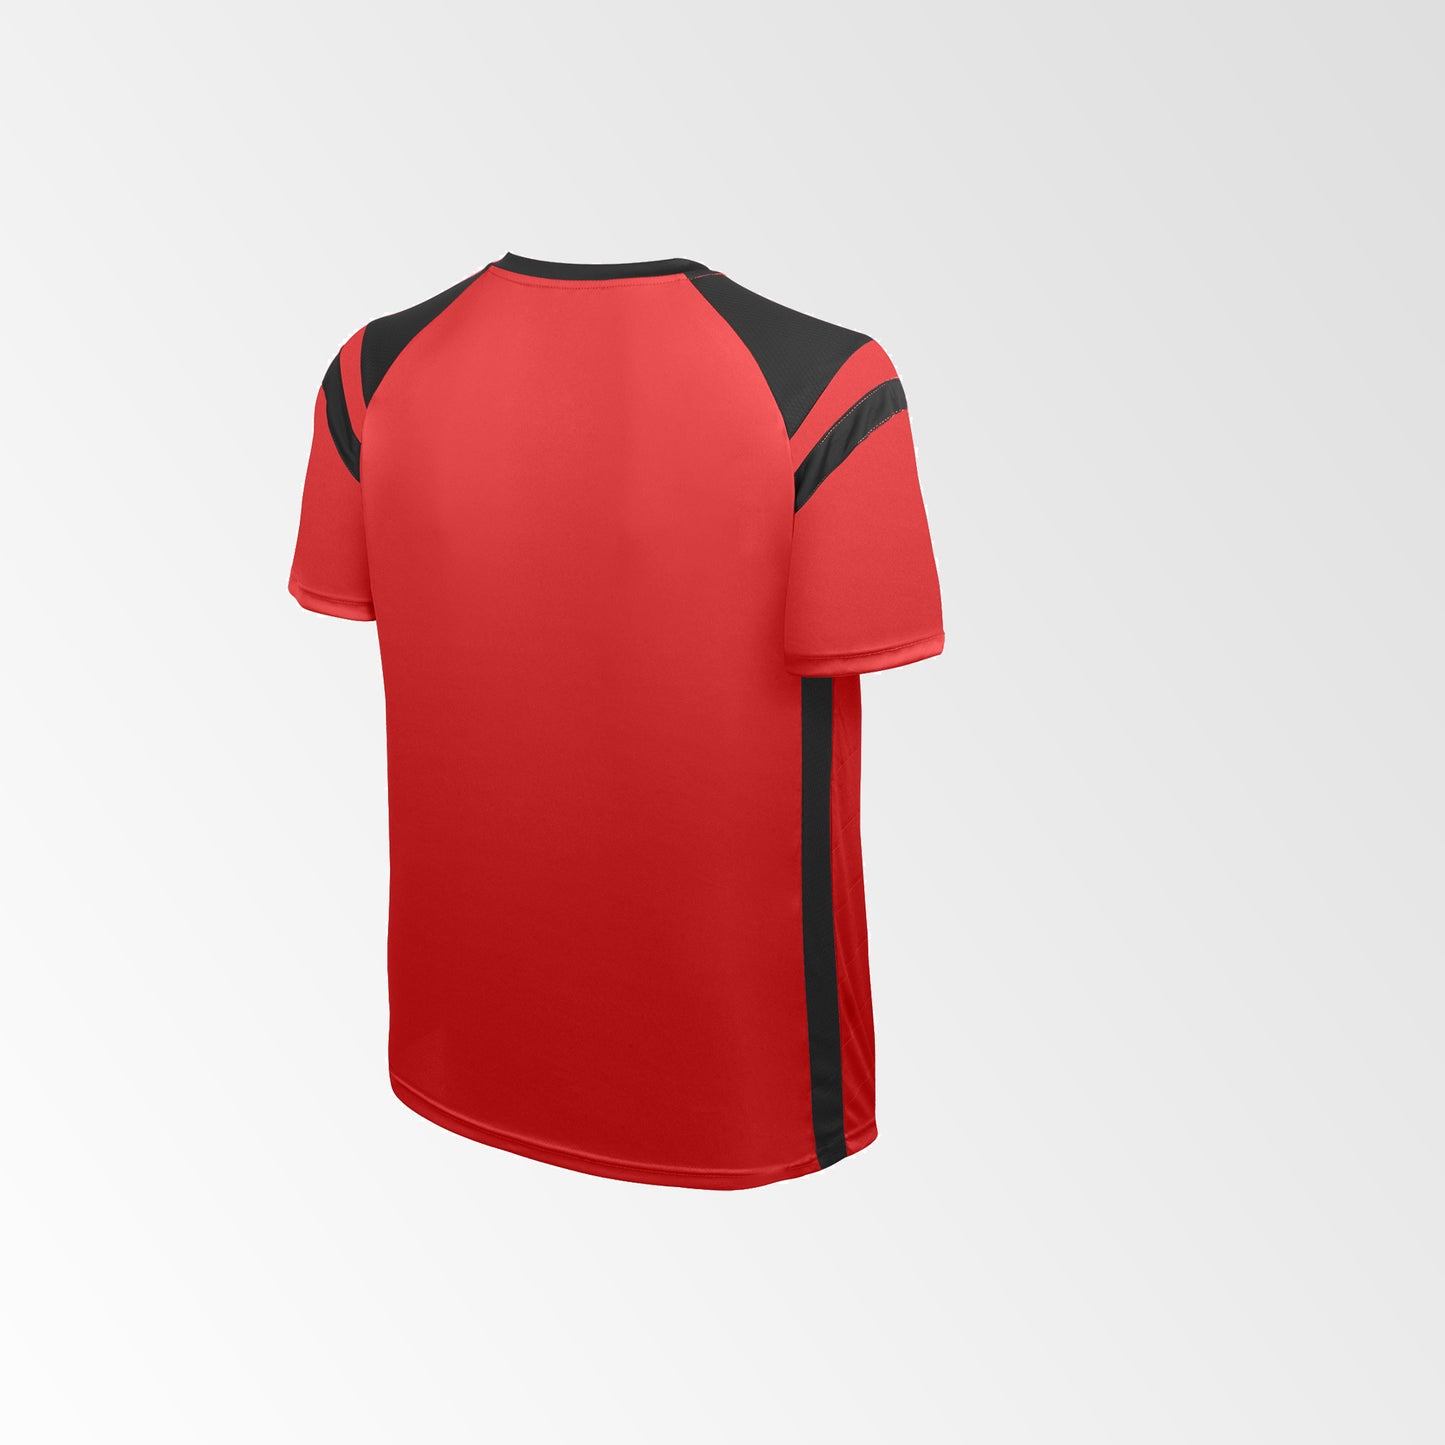 Camiseta de Futbol y Short Modelo High Five Rojo Negro